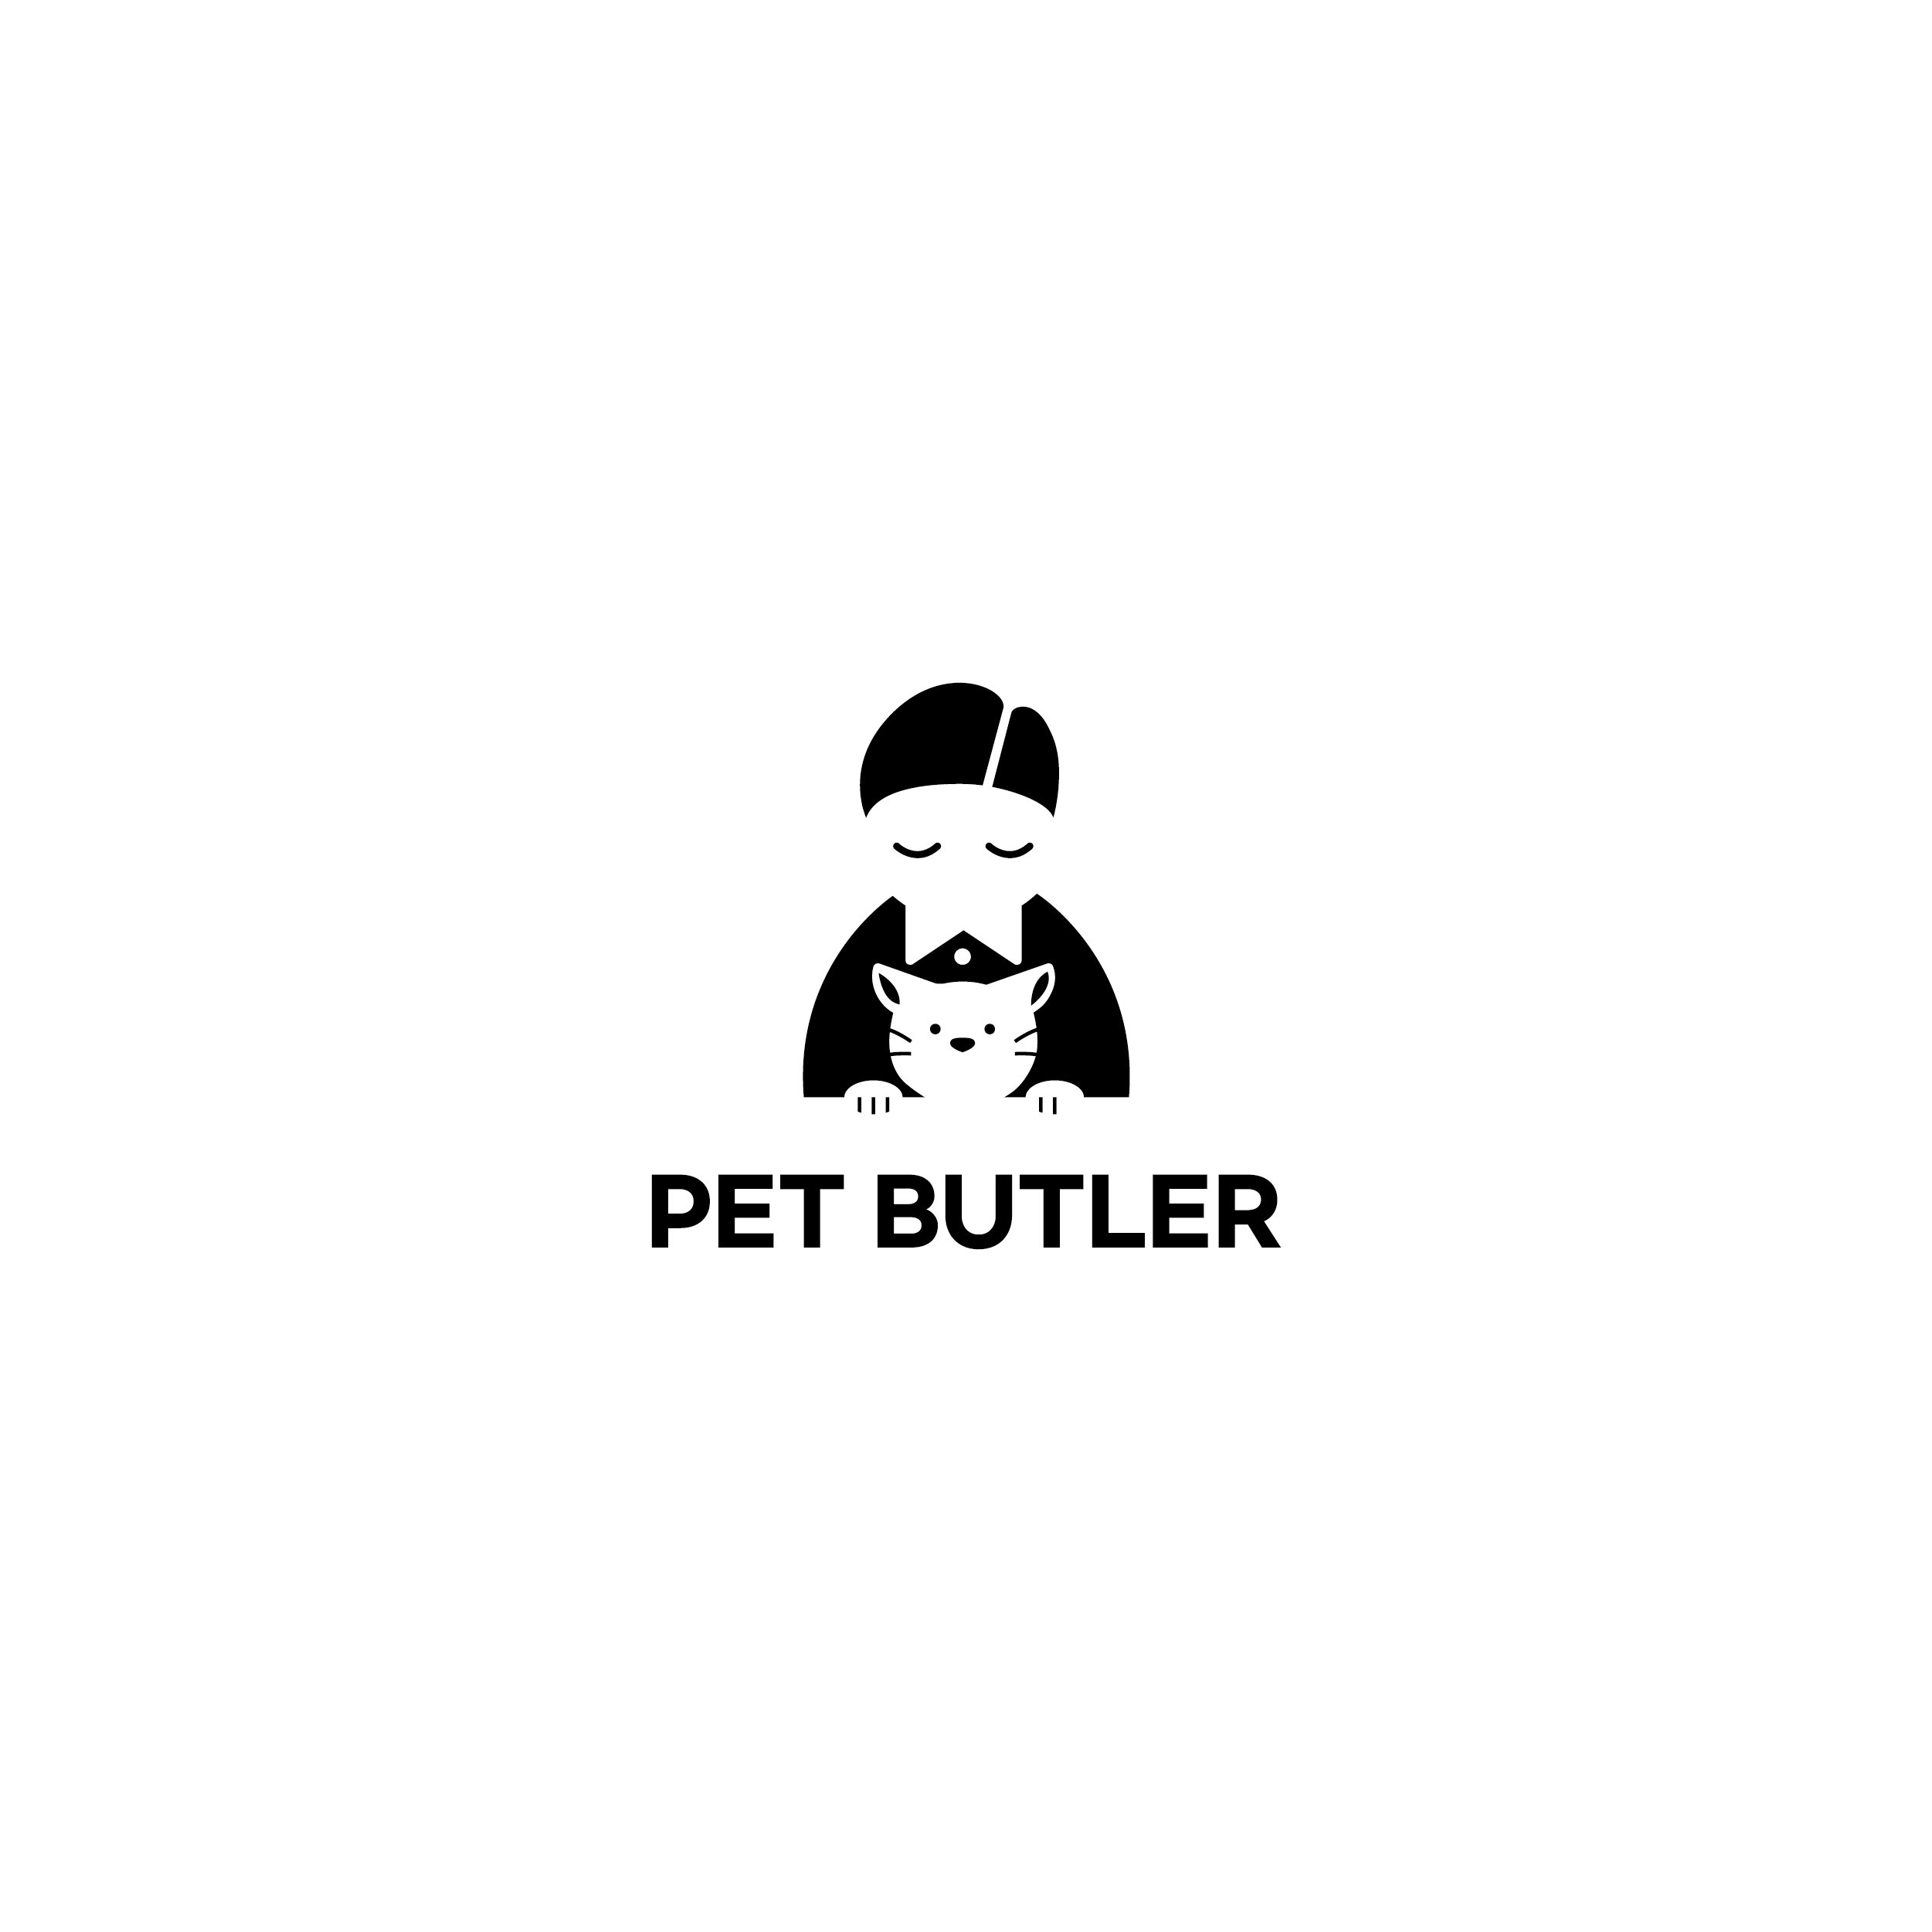  PET BUTLER